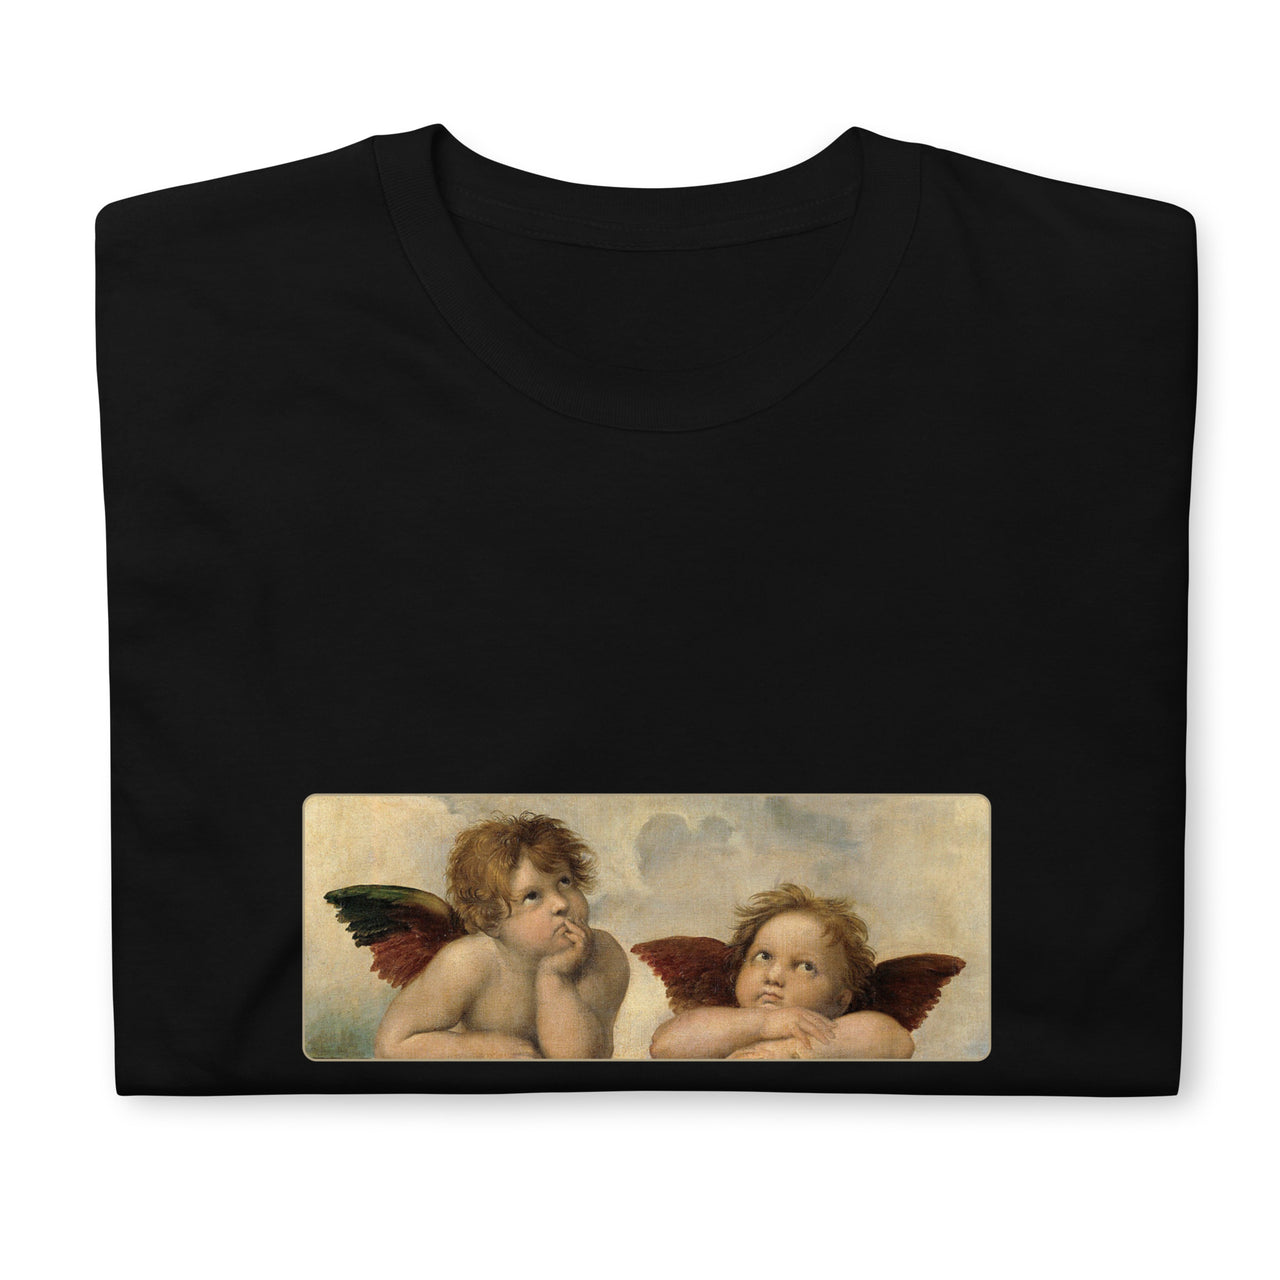 Raphael Cherubs Artwork Renaissance T-Shirt